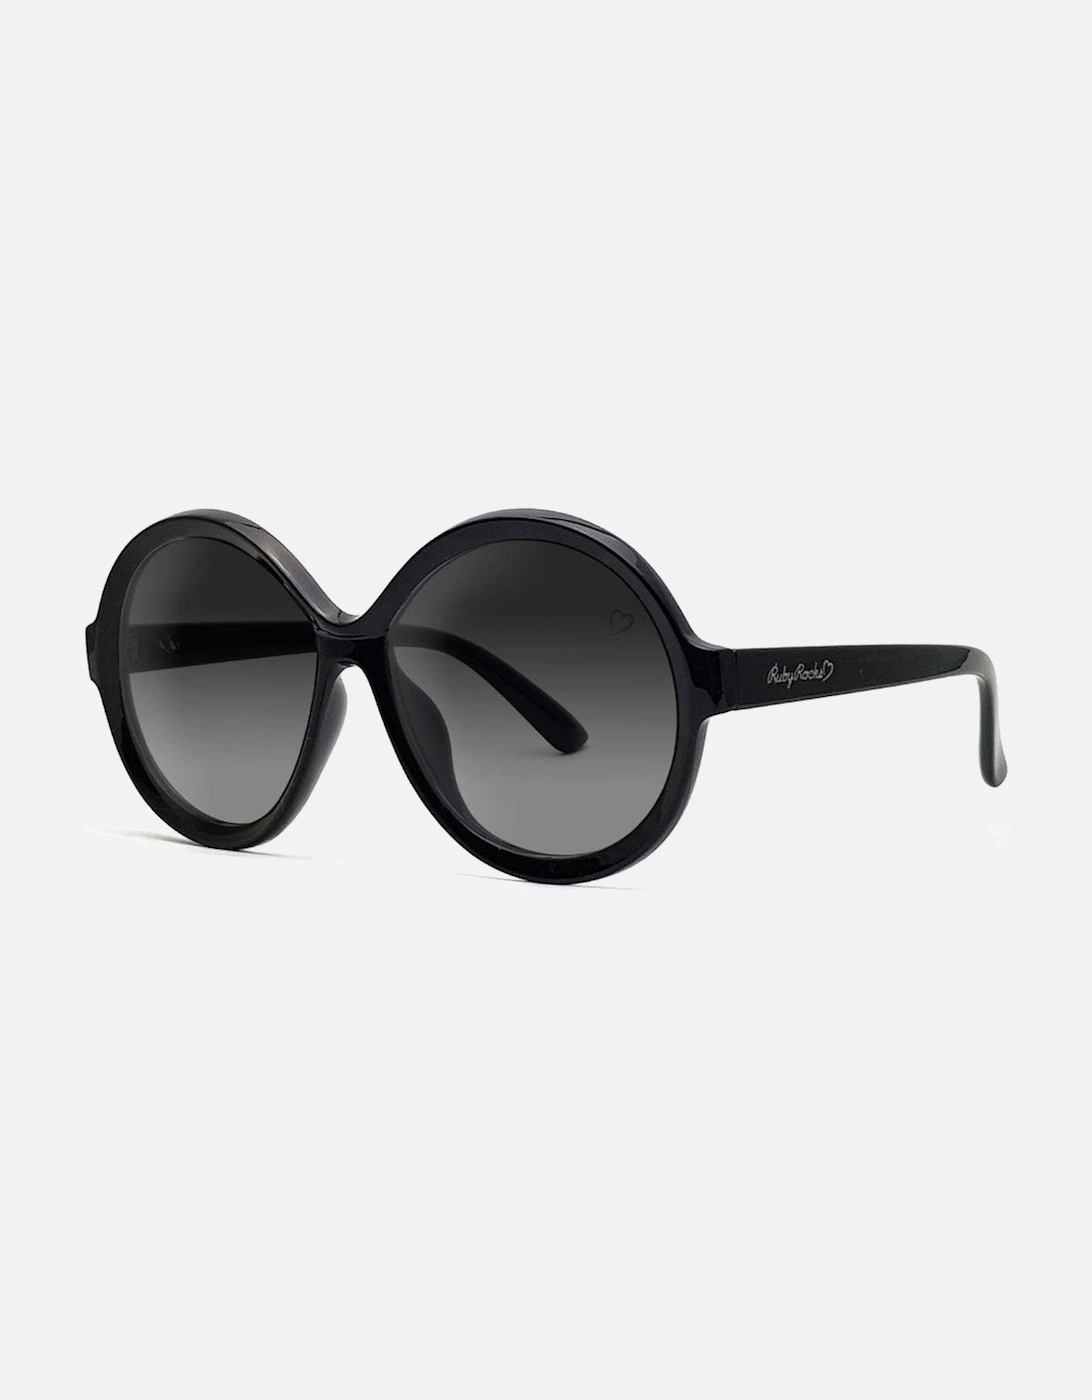 'Jessica Elsie' Round Sunglasses In Black, 2 of 1